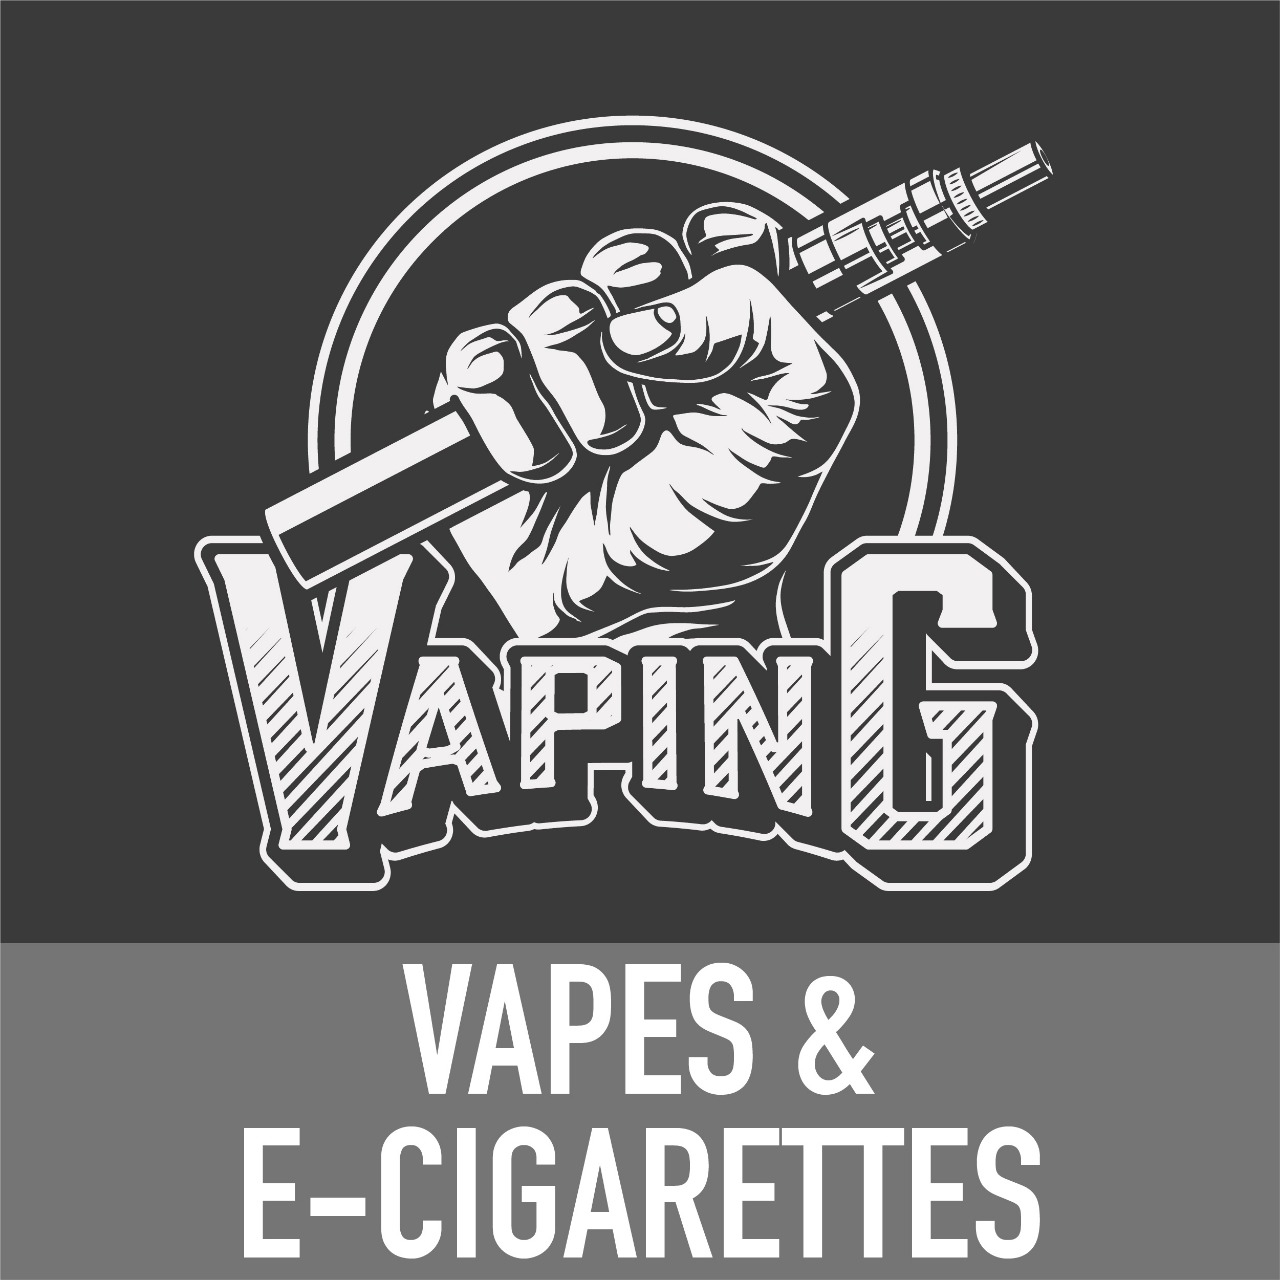 Vapes & E-Cigarettes